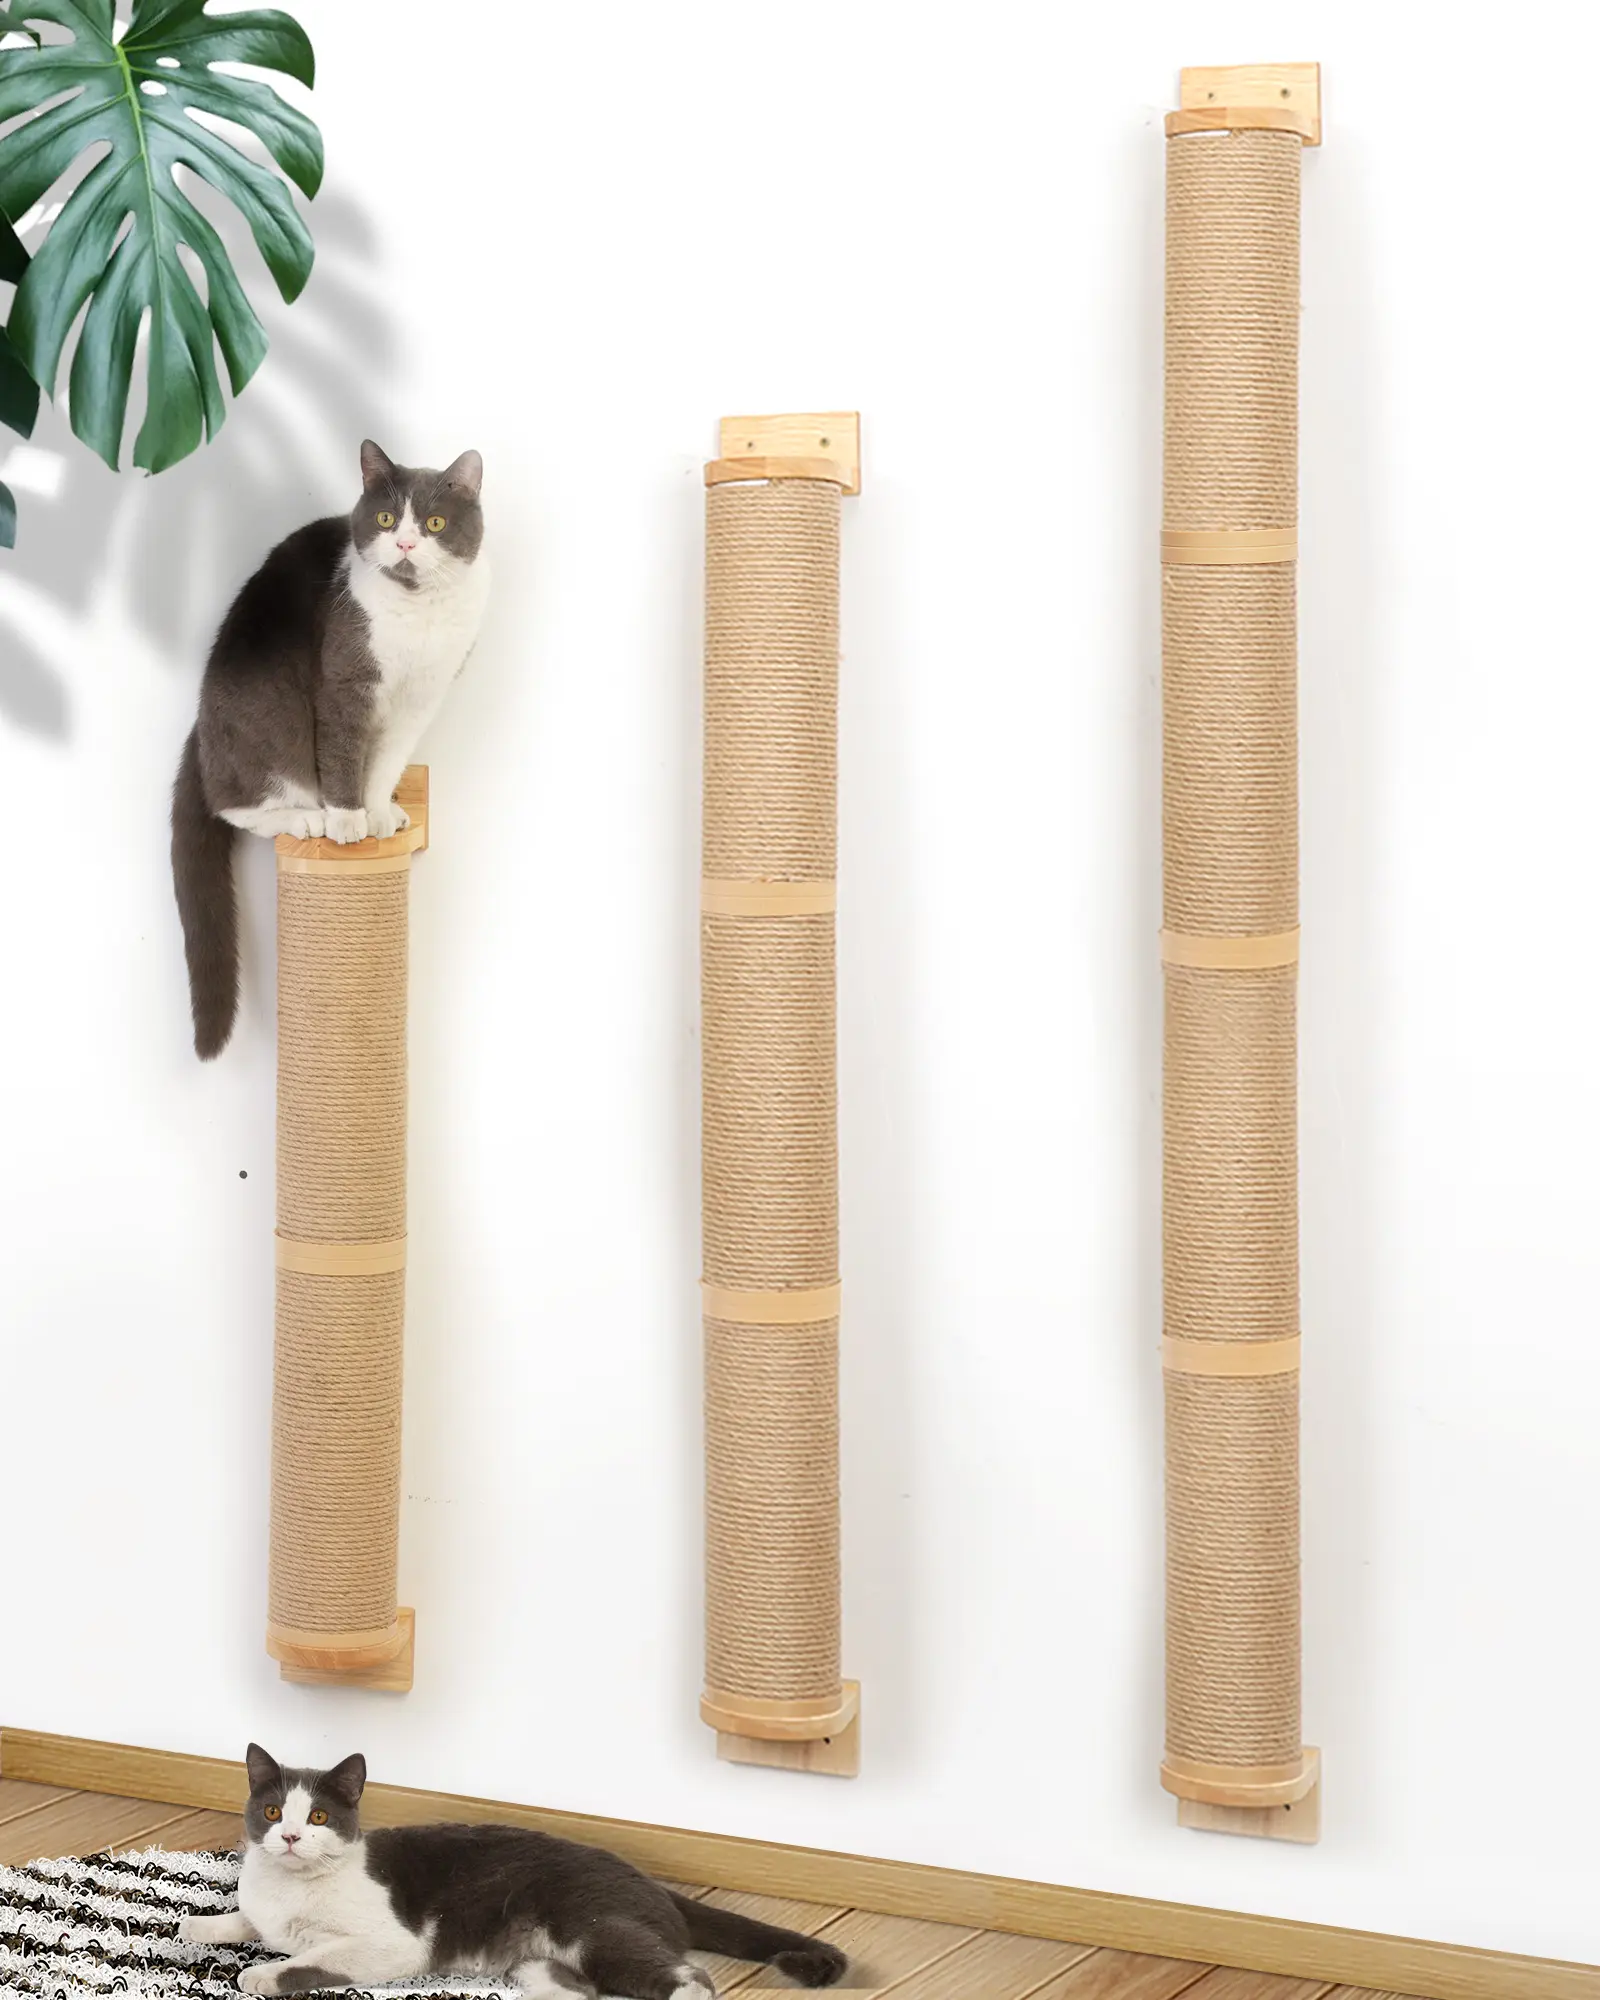 FUKUMARU Spot оптовая продажа резиновая деревянная двухколонная рама для кошек, Когтеточка, запасные части